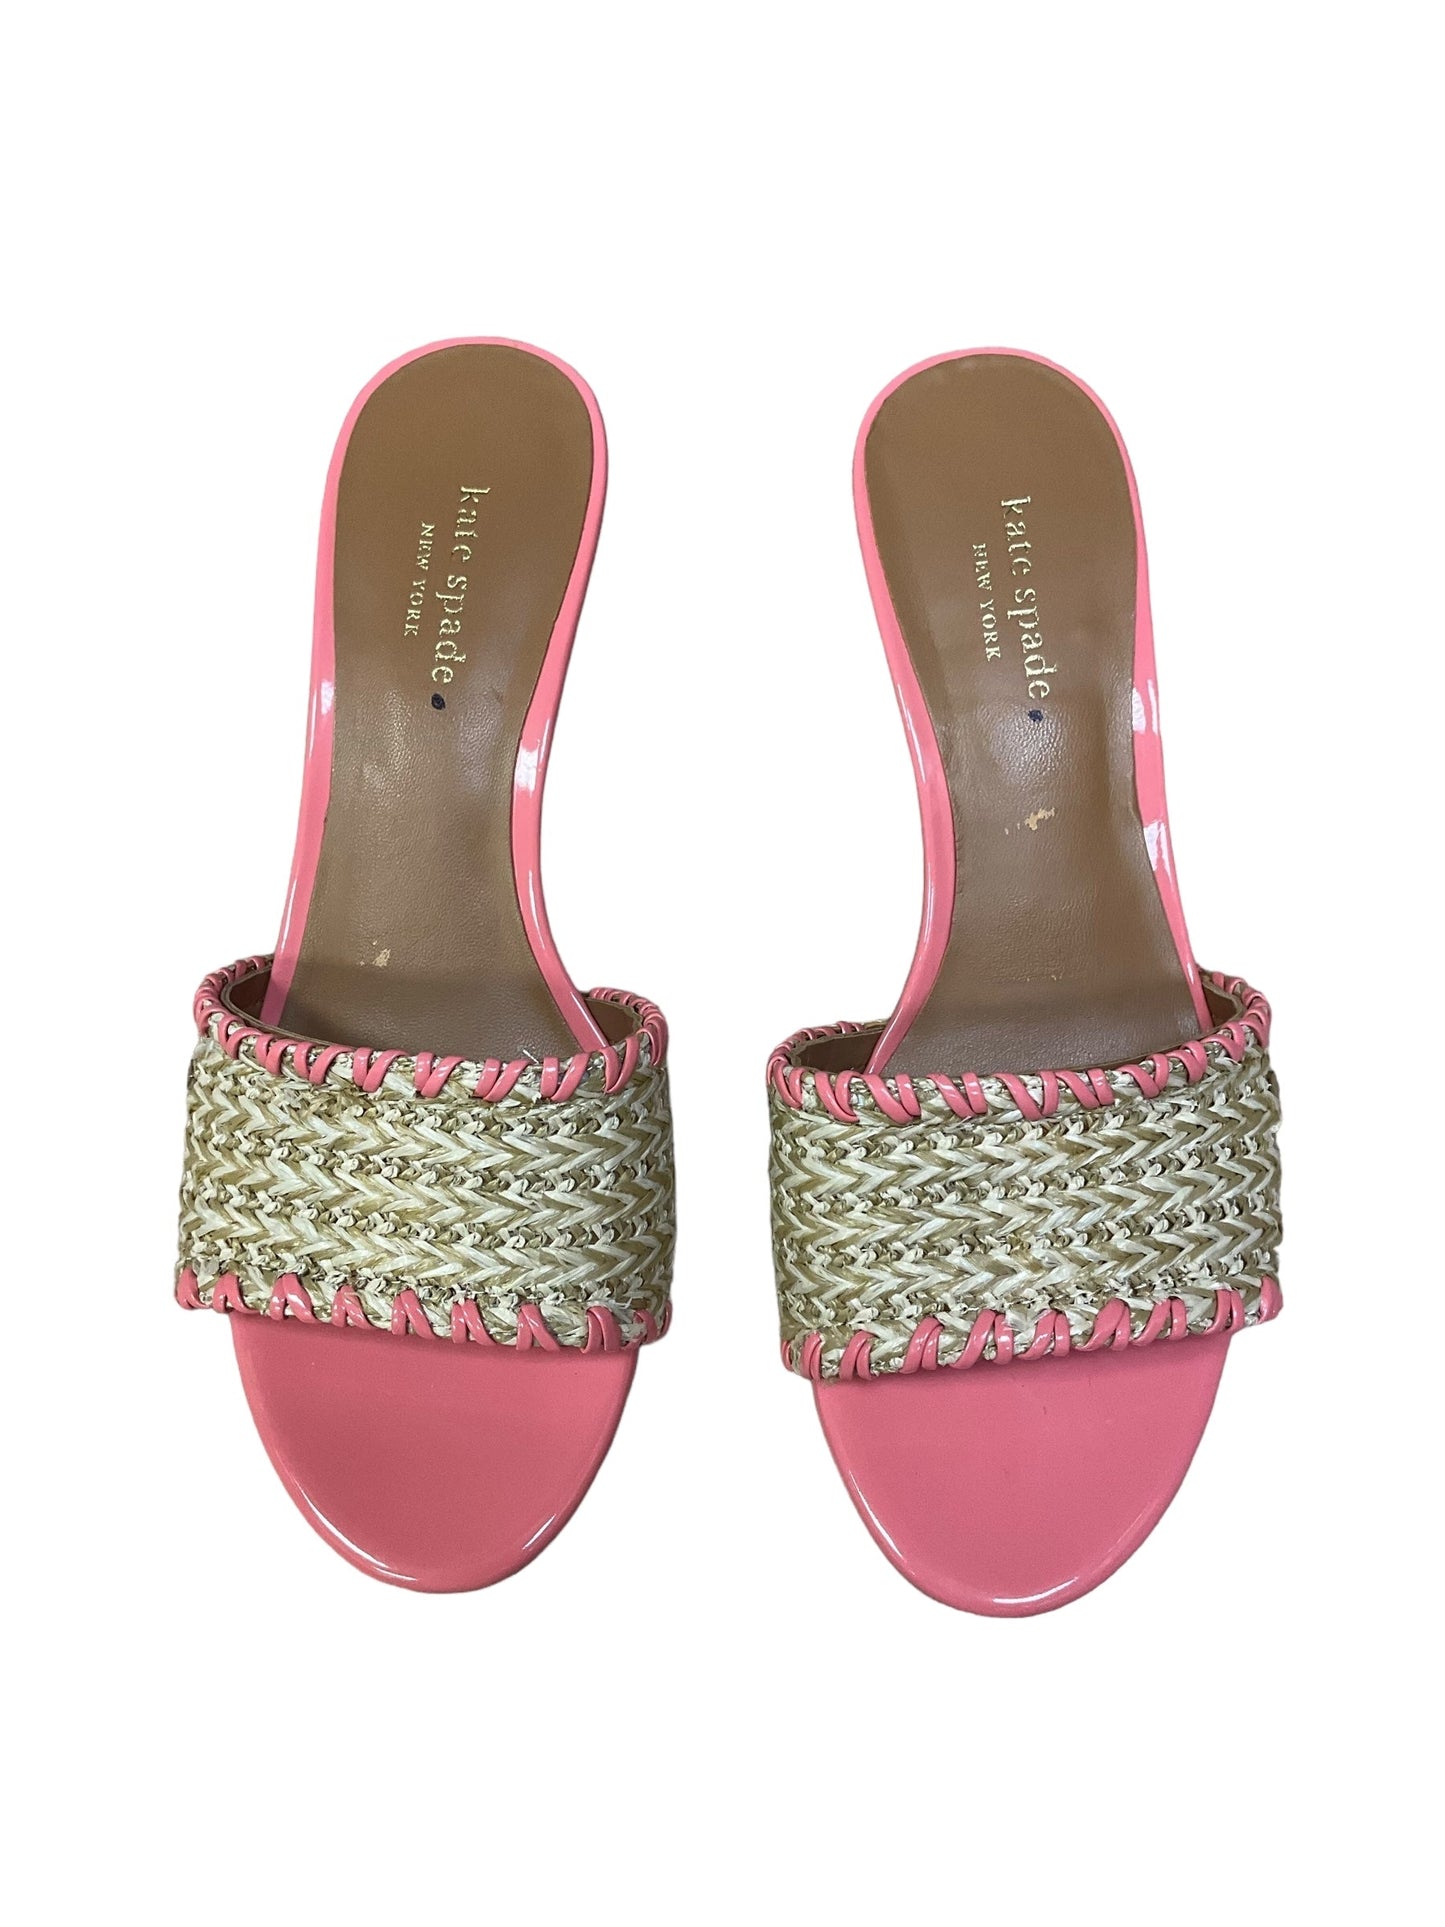 Coral Sandals Designer Kate Spade, Size 8